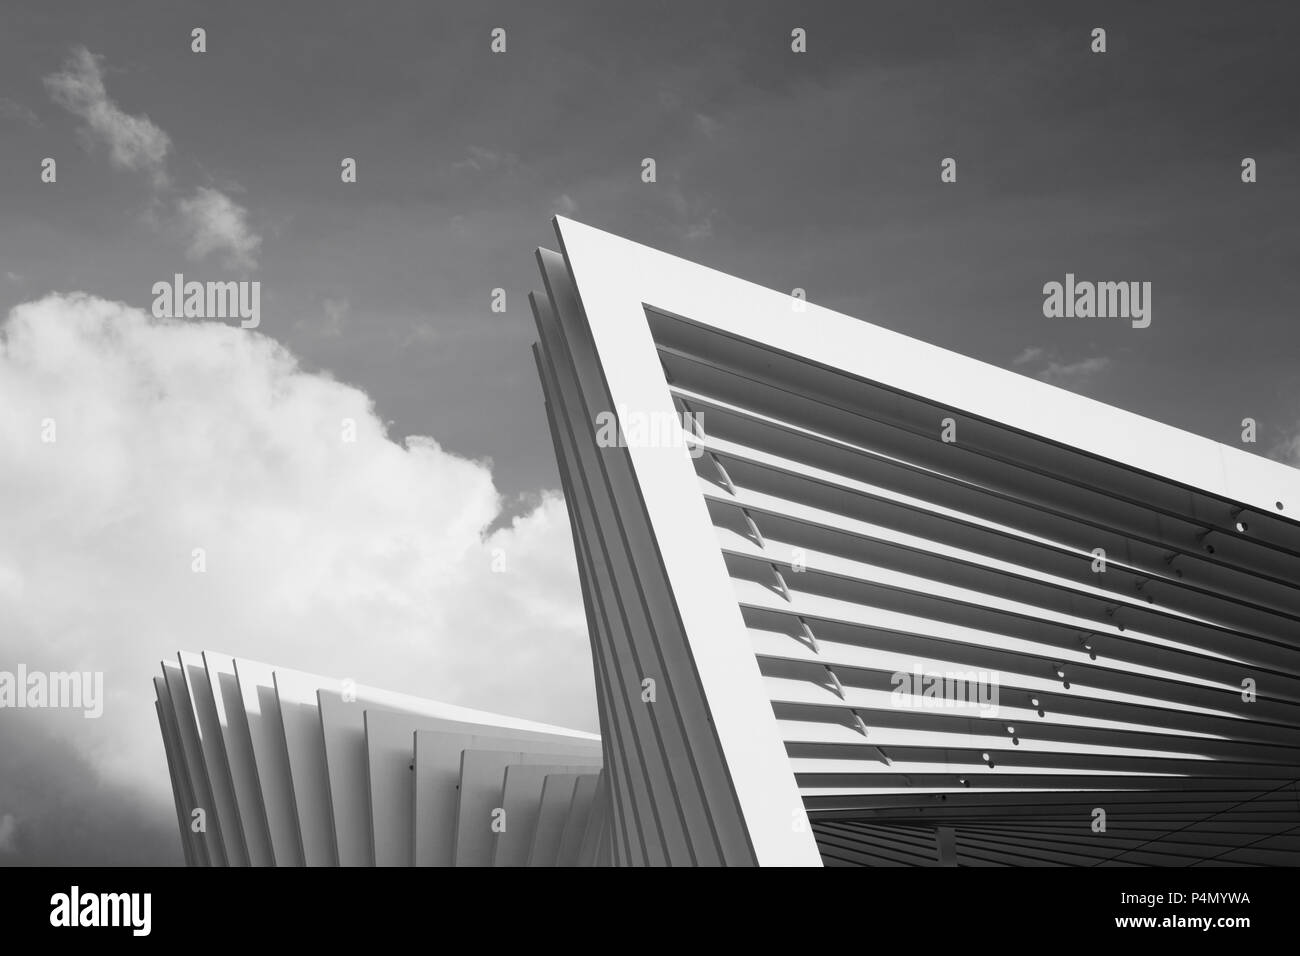 REGGIO EMILIA, Italia - 13 Aprile 2018: Reggio Emilia AV Mediopadana stazione ferroviaria dall'architetto Santiago Calatrava. Foto Stock